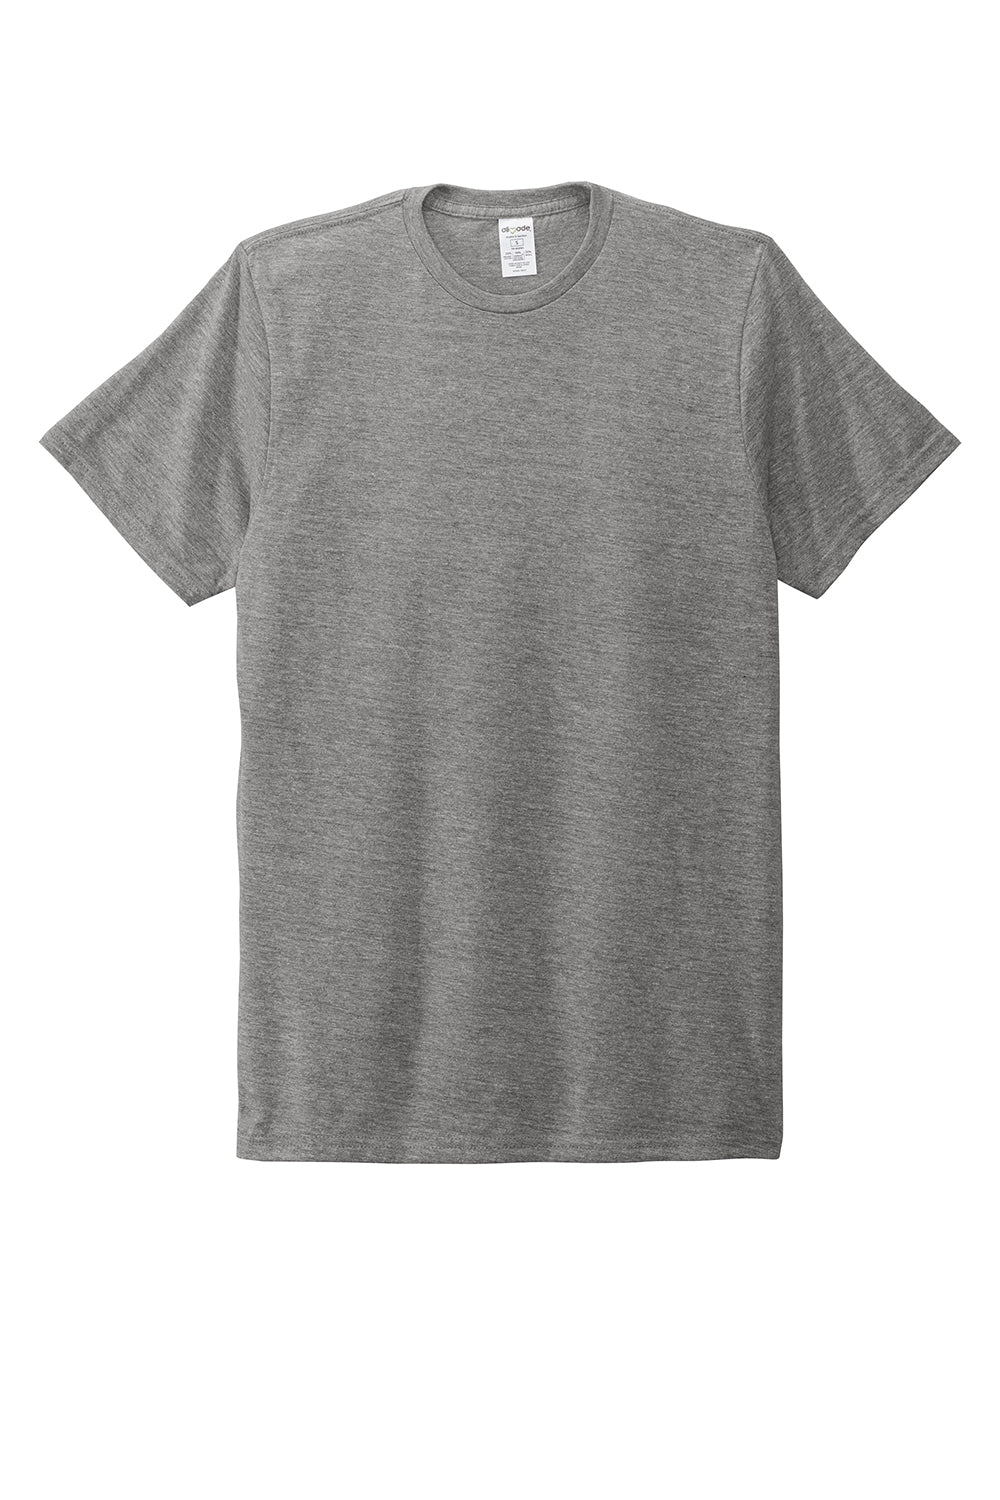 Allmade AL2004 Mens Short Sleeve Crewneck T-Shirt Aluminum Grey Flat Front